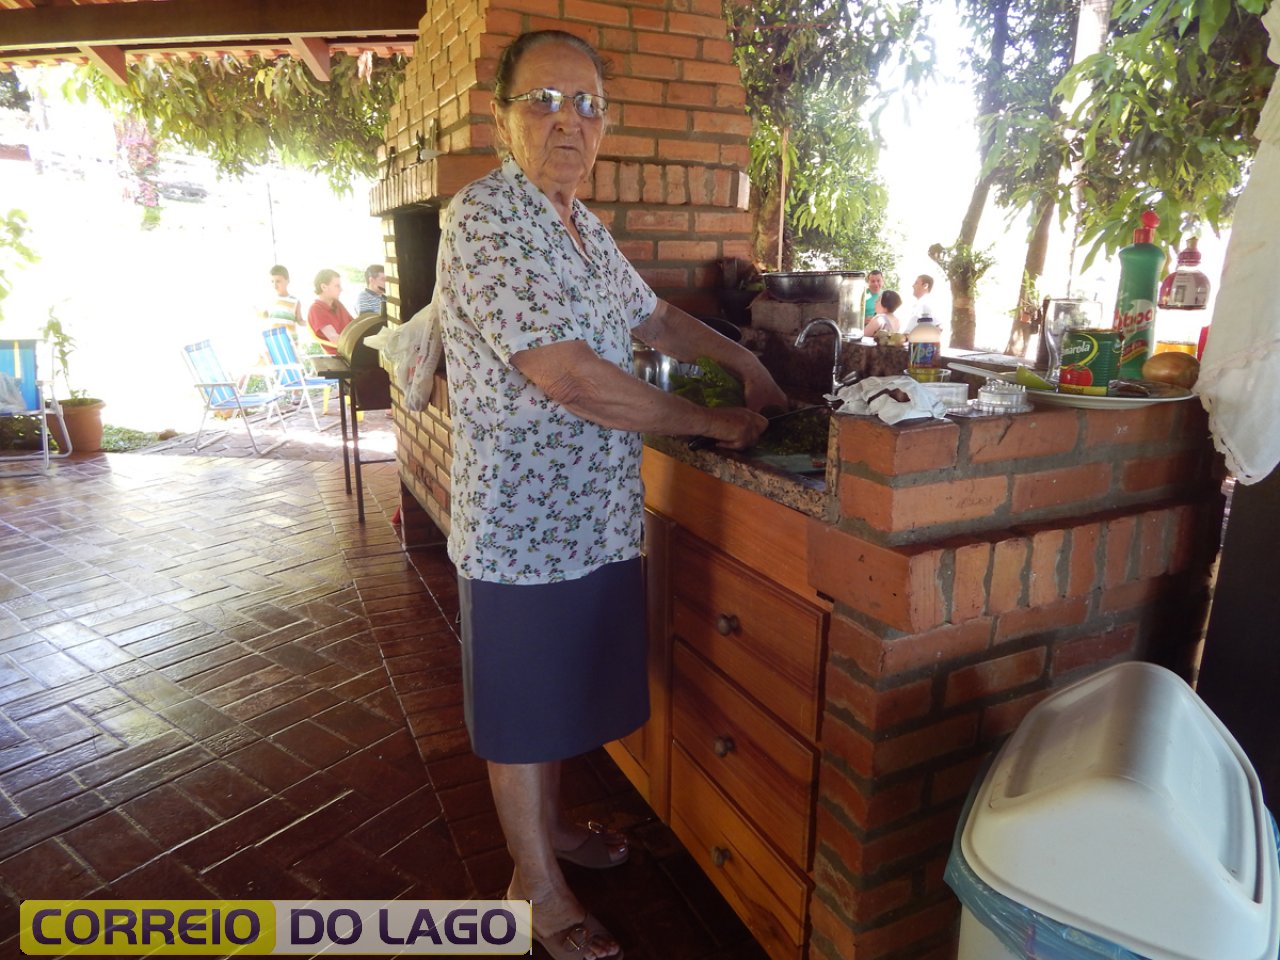 Tia Manuela M. Correia desfrutando do lazer no sítio do filho Marcio Correia. Interior de Vera Cruz do Oeste. Novembro de 2014.